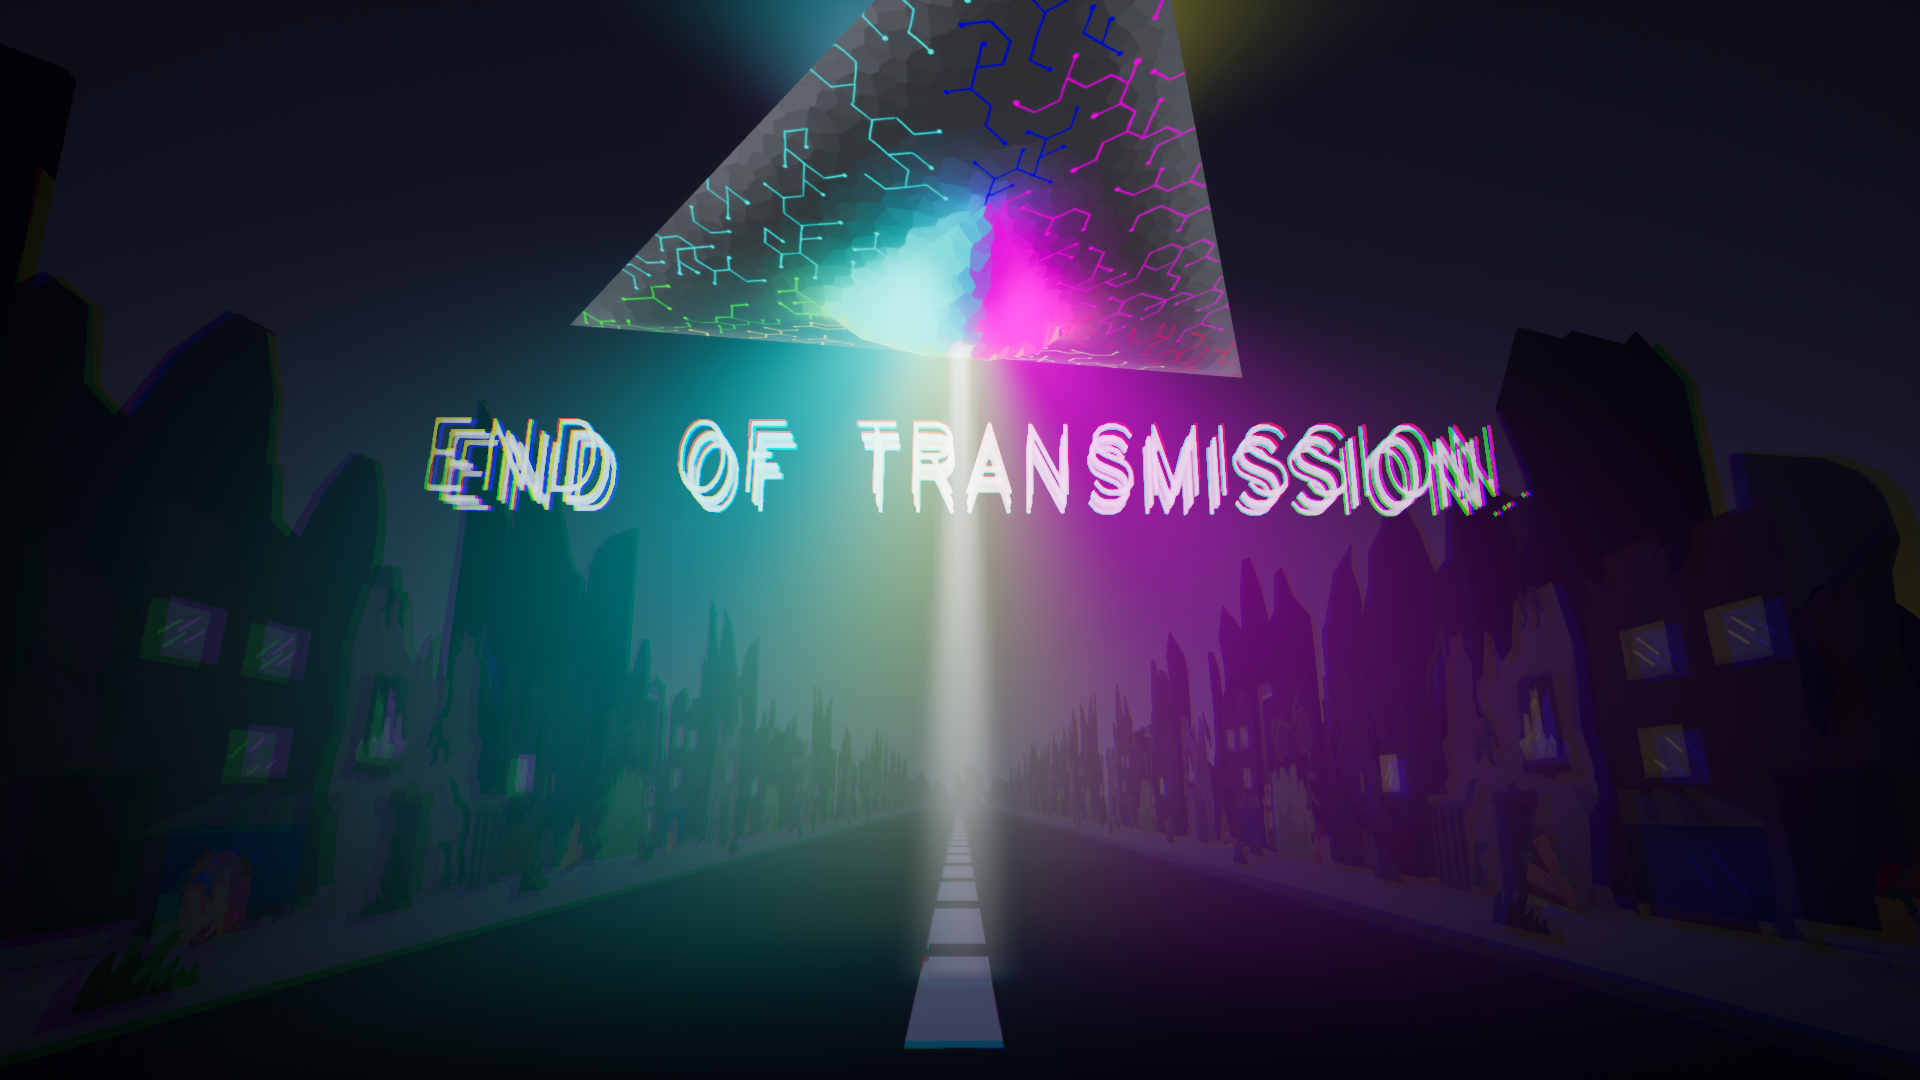 END OF TRANSMISSION